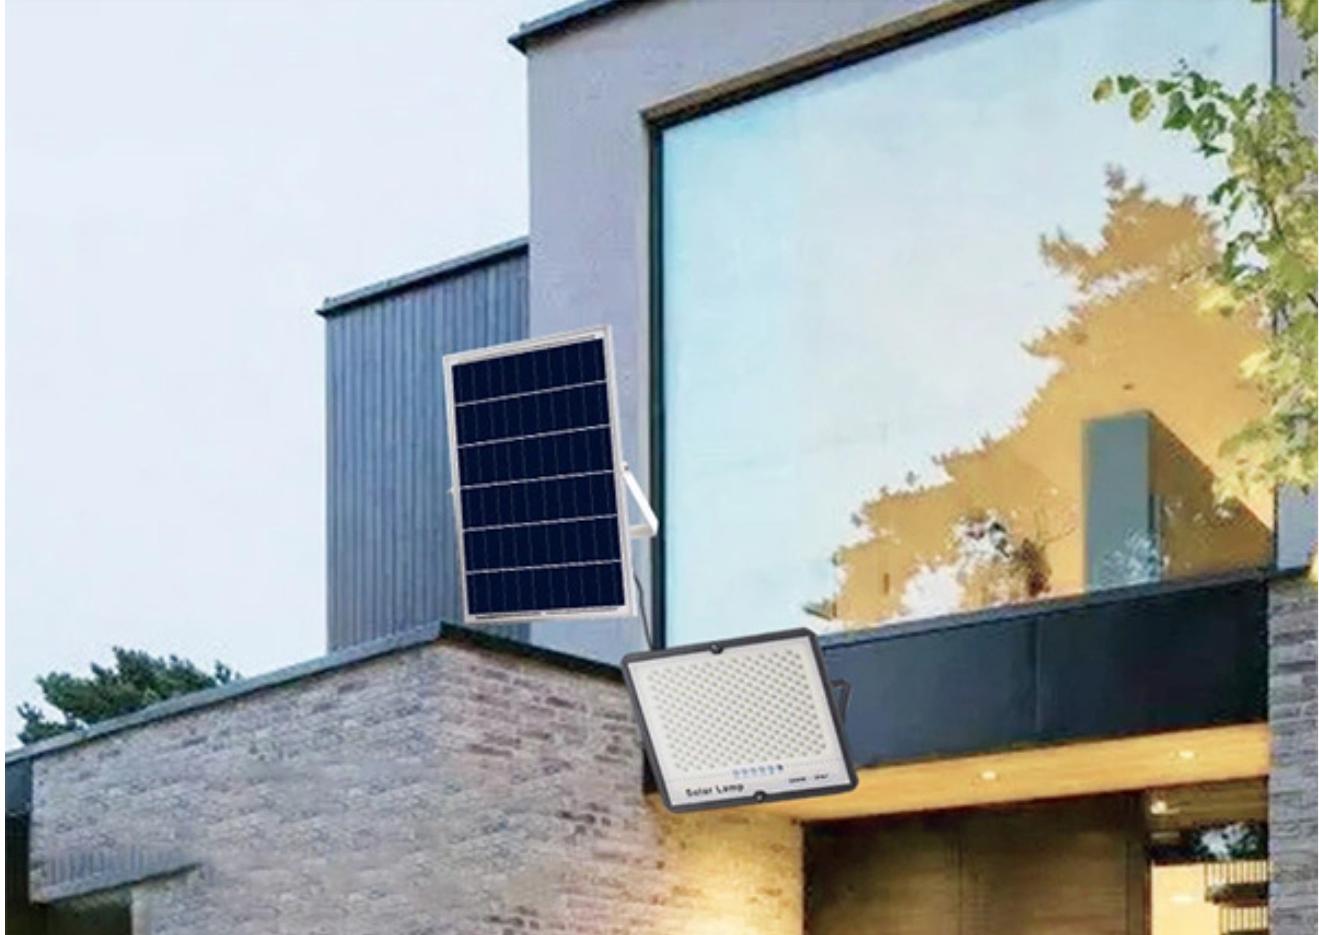 Đèn led buld năng lượng mặt trời Xuất xứ: Taiwan Sử dụng đui E27 Điện áp 220V/50HZ Thời gian sử dụng 8h Tấm pin: 6W/6V Khung nhôm Pin LiFePO4: 3.2V Đèn pha năng lượng mặt trời 50w, phân phối tại công ty